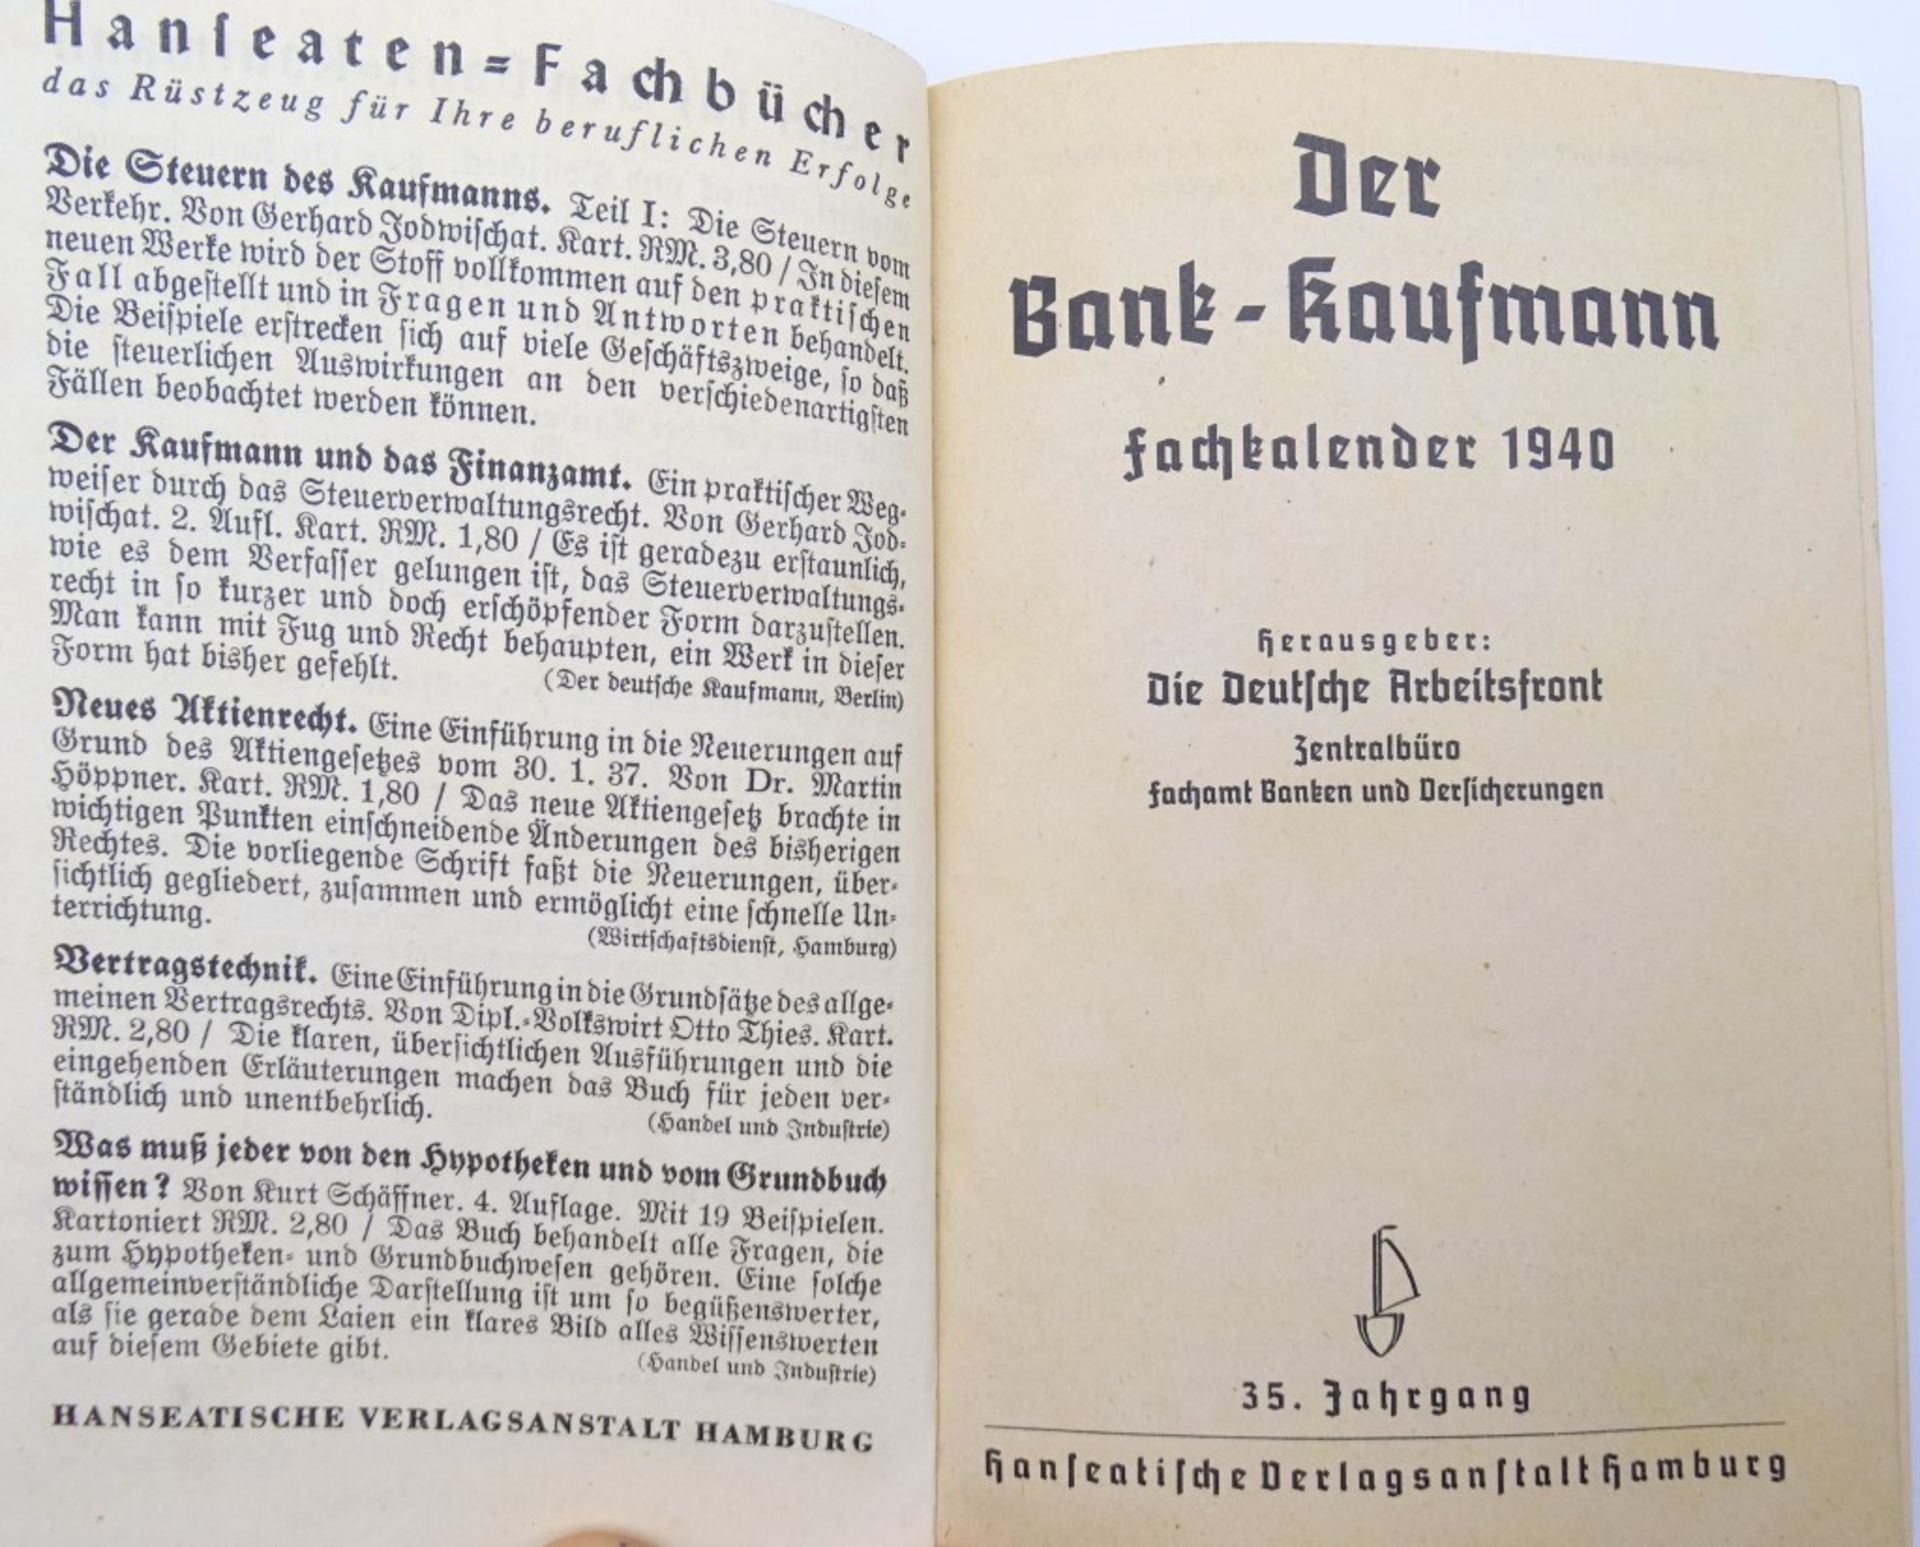 Der Bank-Kaufmann Fachkalender 1940, 35.Jahrgang,"""" - Bild 2 aus 7